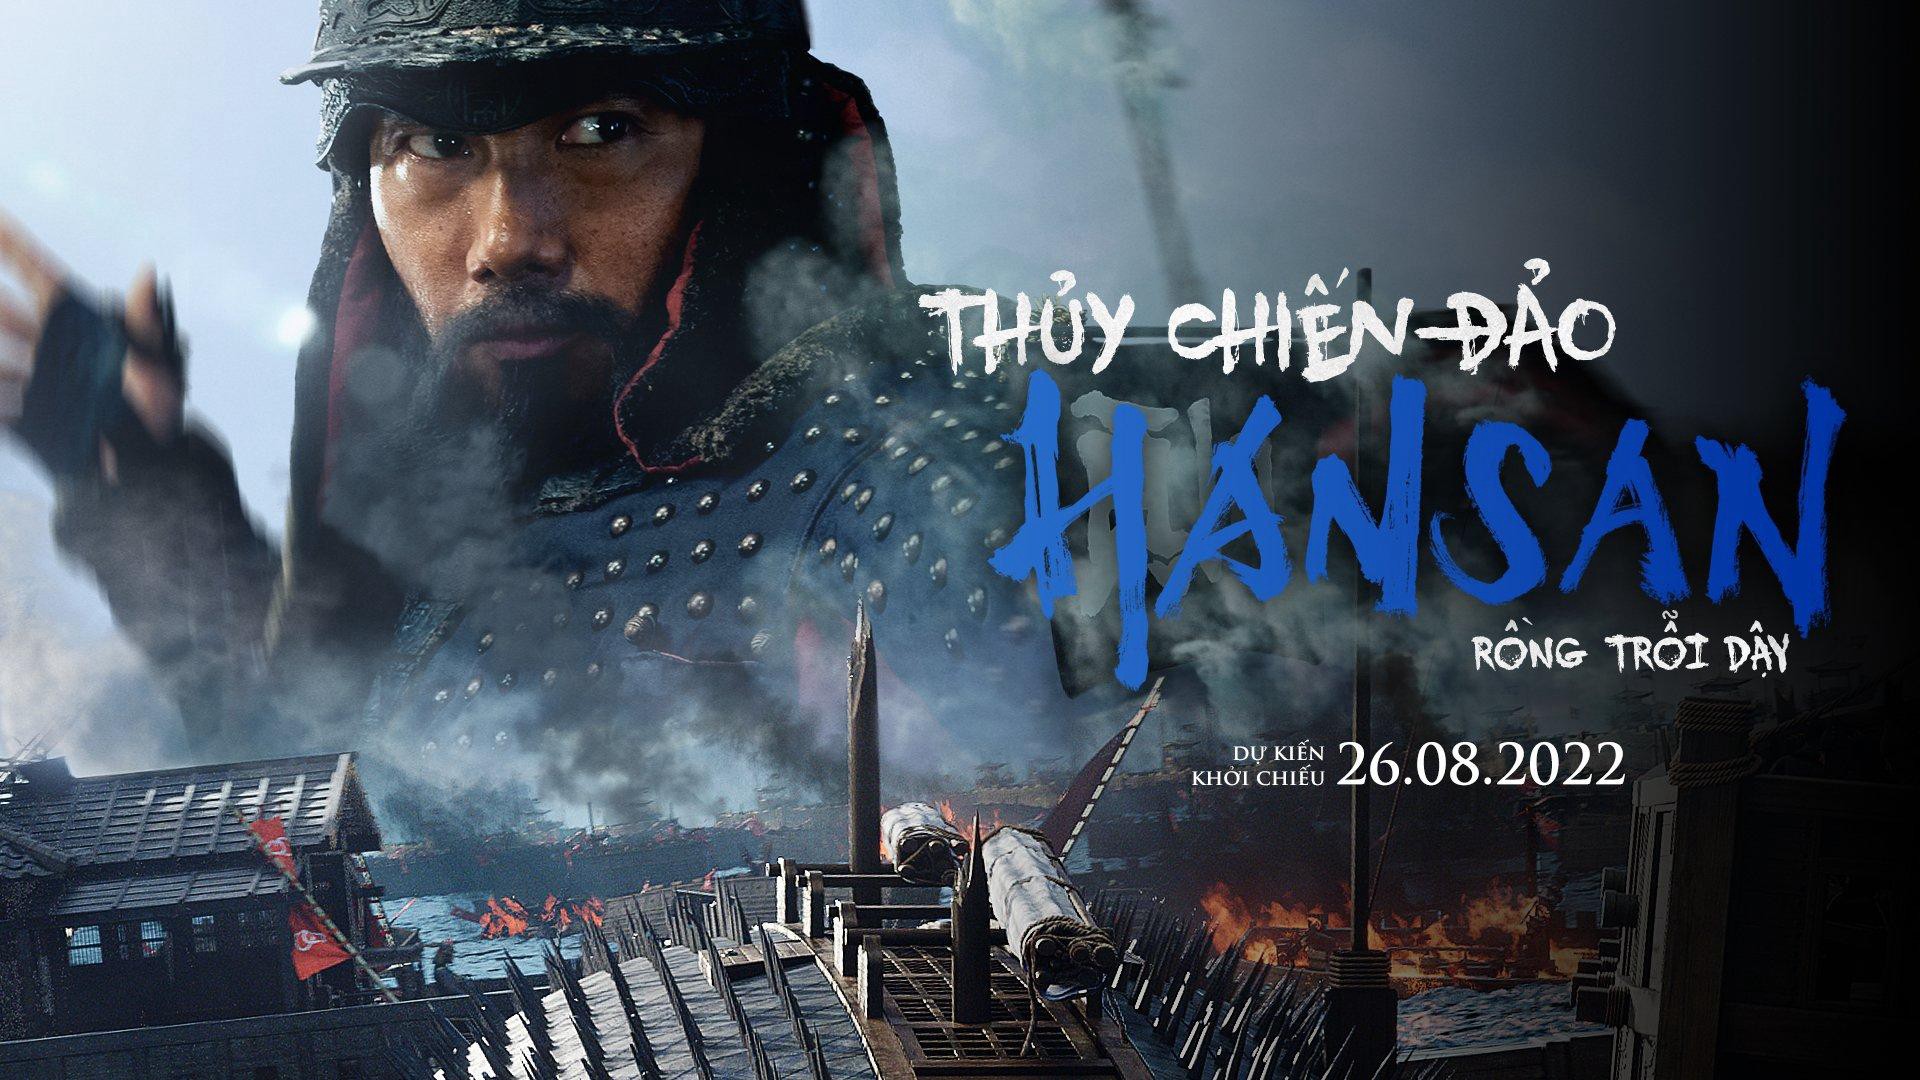 Thủy Chiến Đảo Hansan: Rồng Trỗi Dậy - Thủy Chiến Đảo Hansan: Rồng Trỗi Dậy